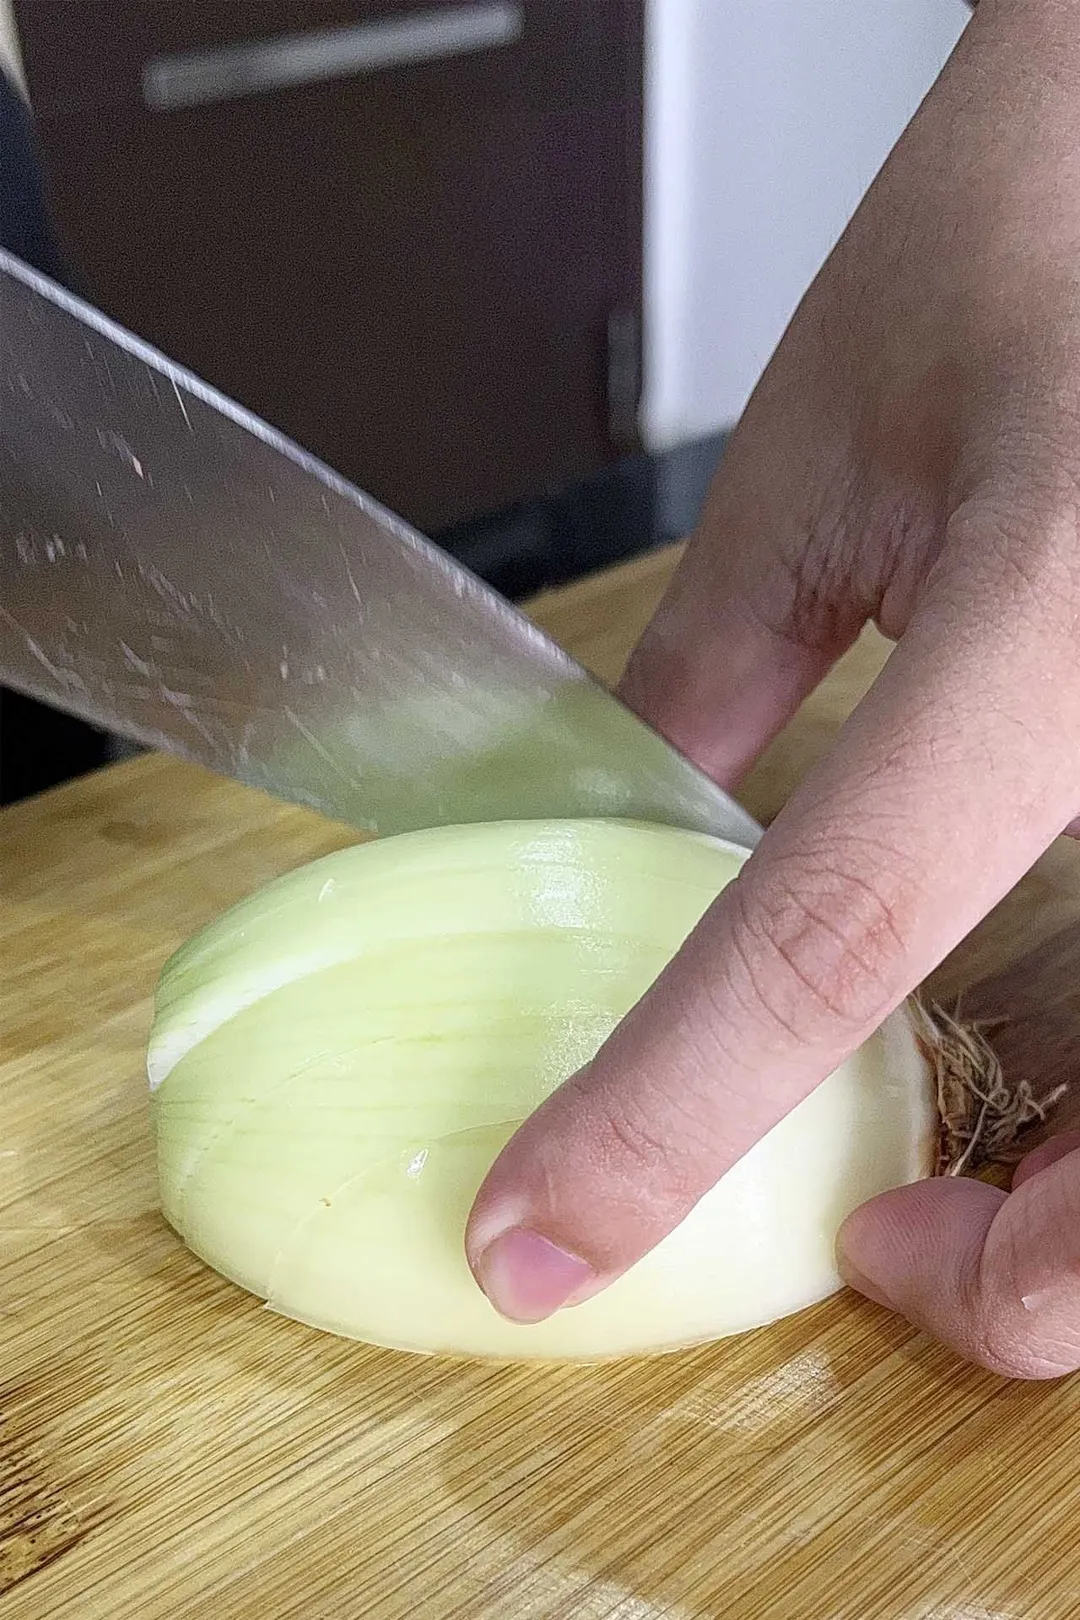 chopping onion on a cutting board